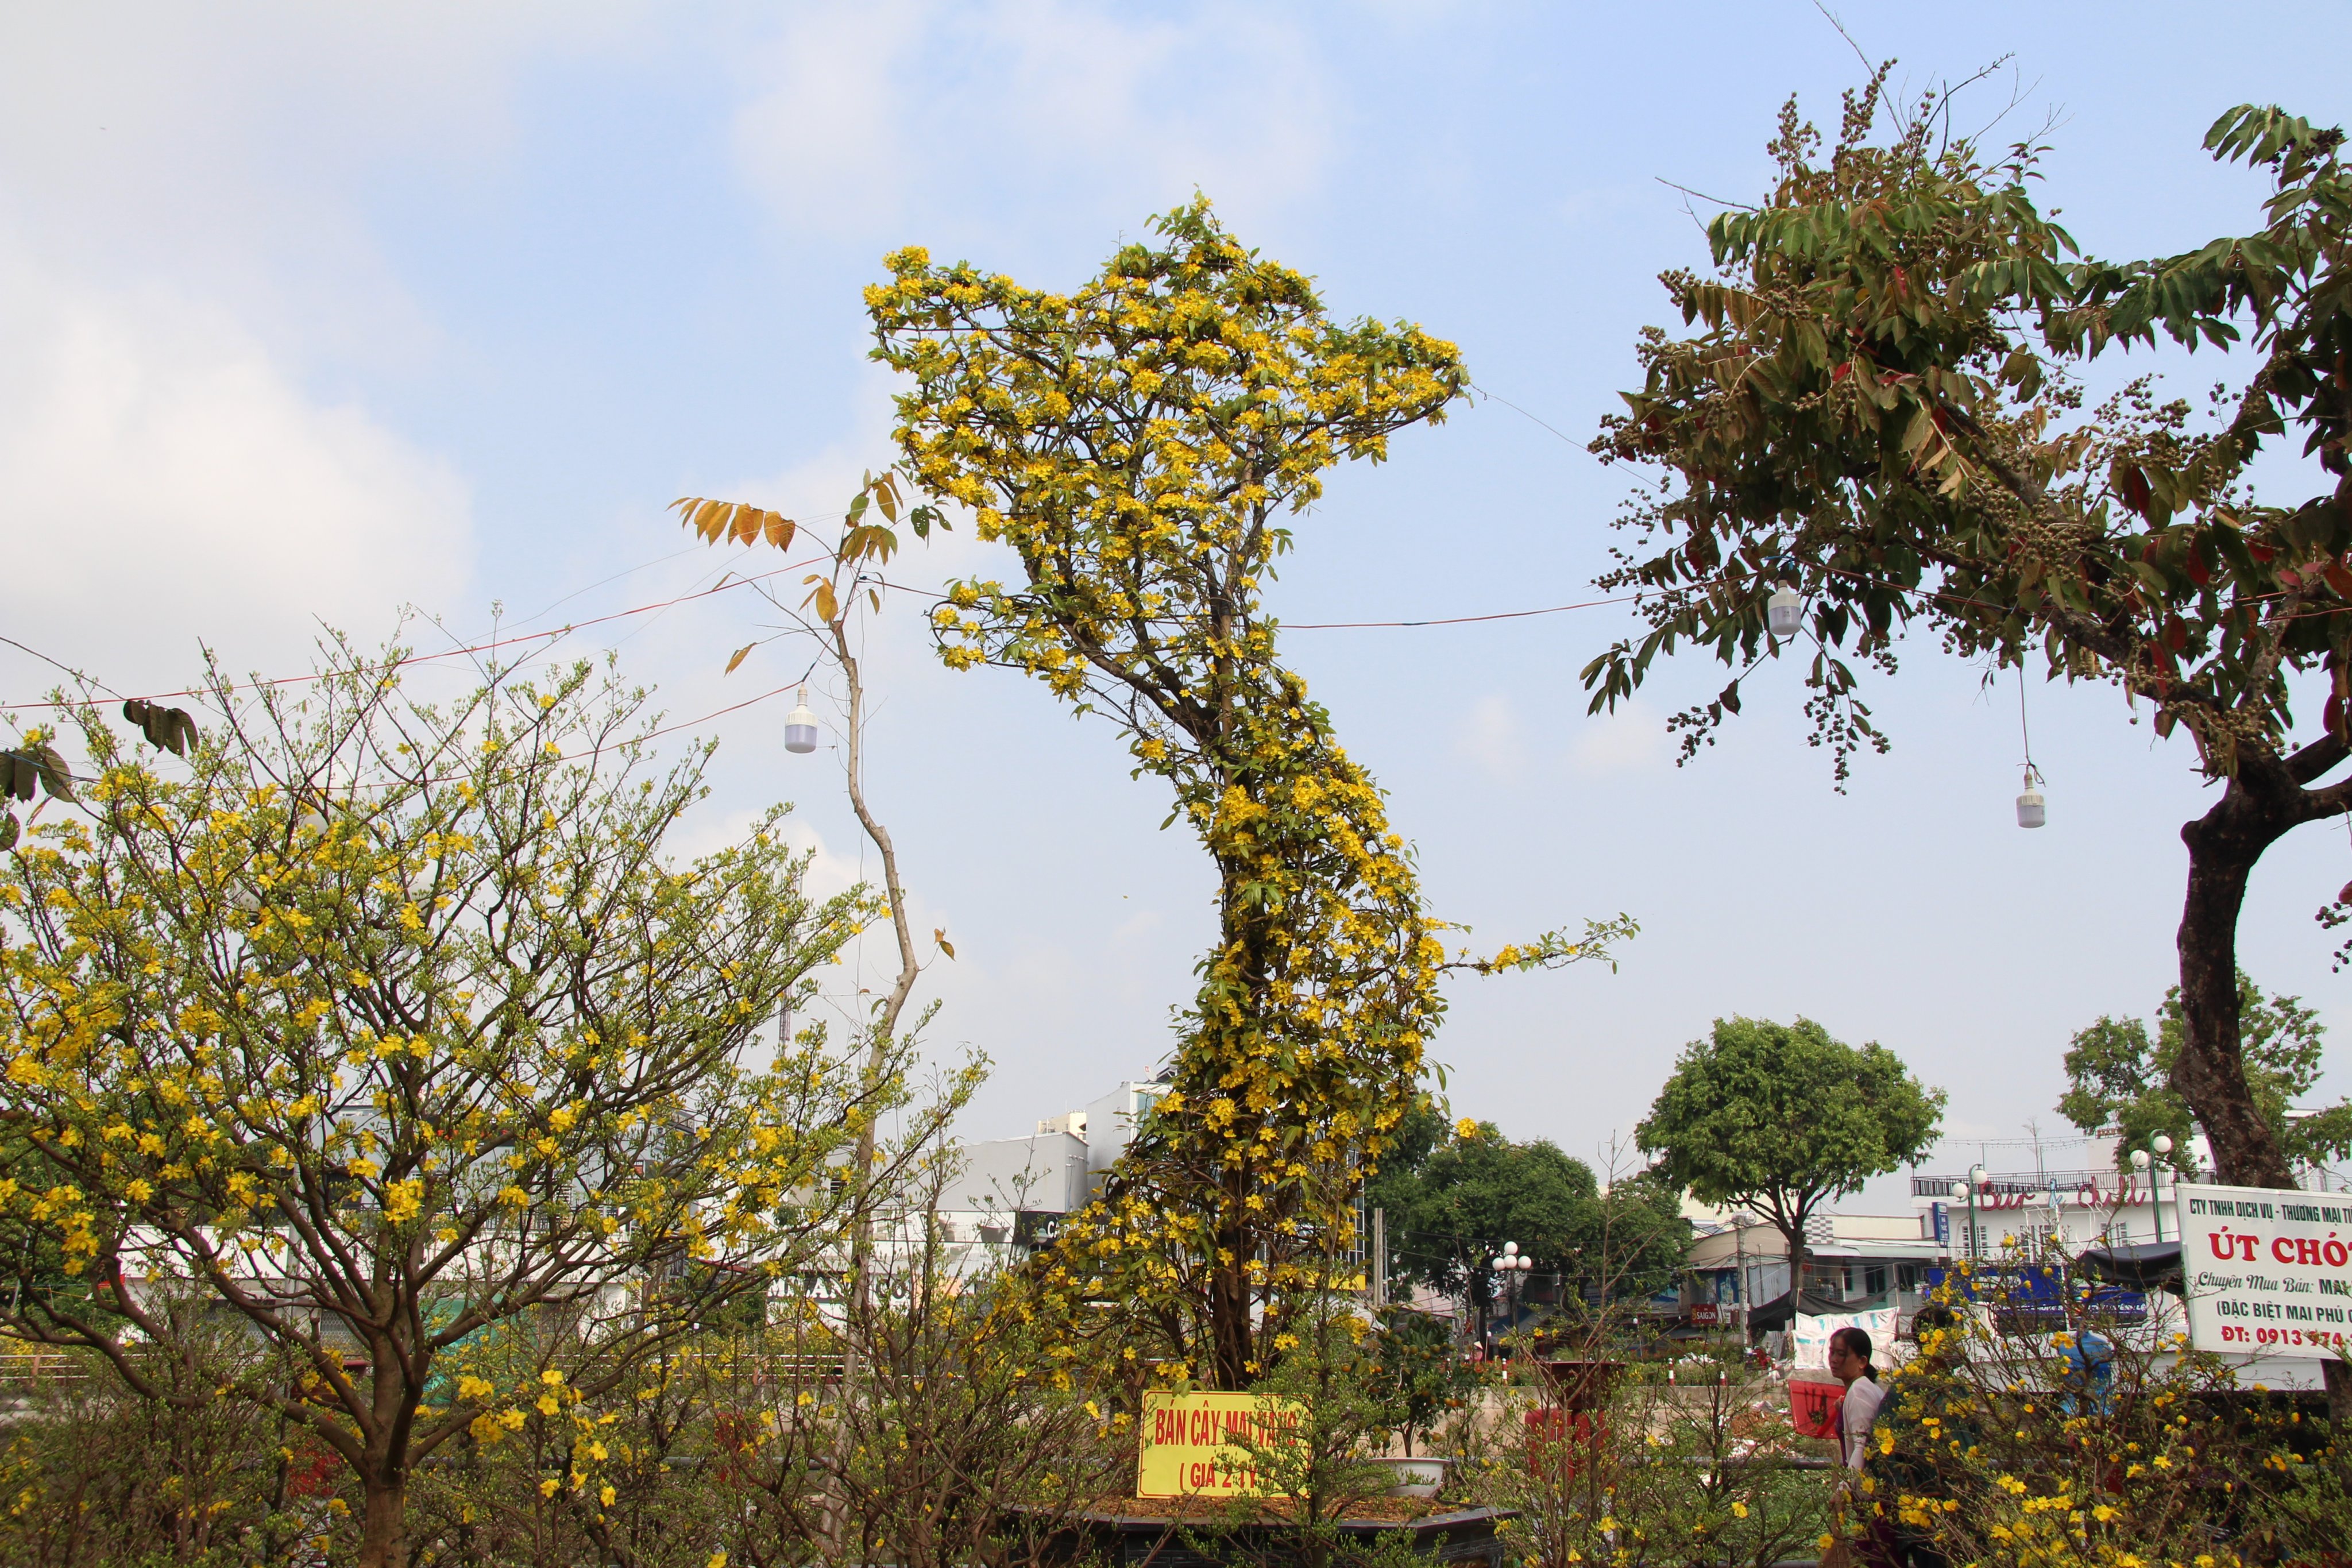 Hoa mai vàng  nét đặc trưng của mùa Xuân phương Nam  Văn hóa  Vietnam  VietnamPlus